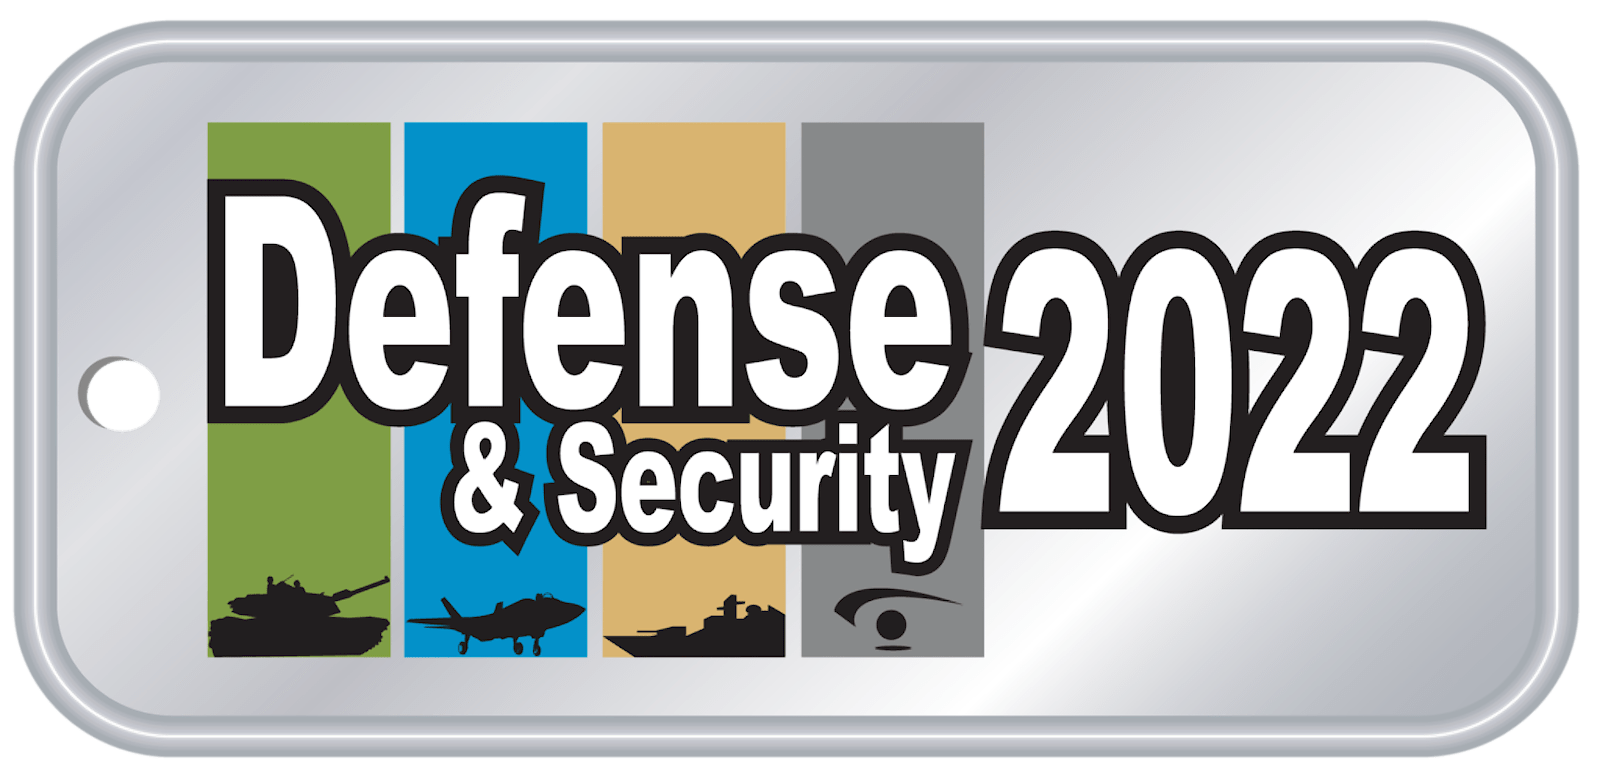 "Defense & Security"